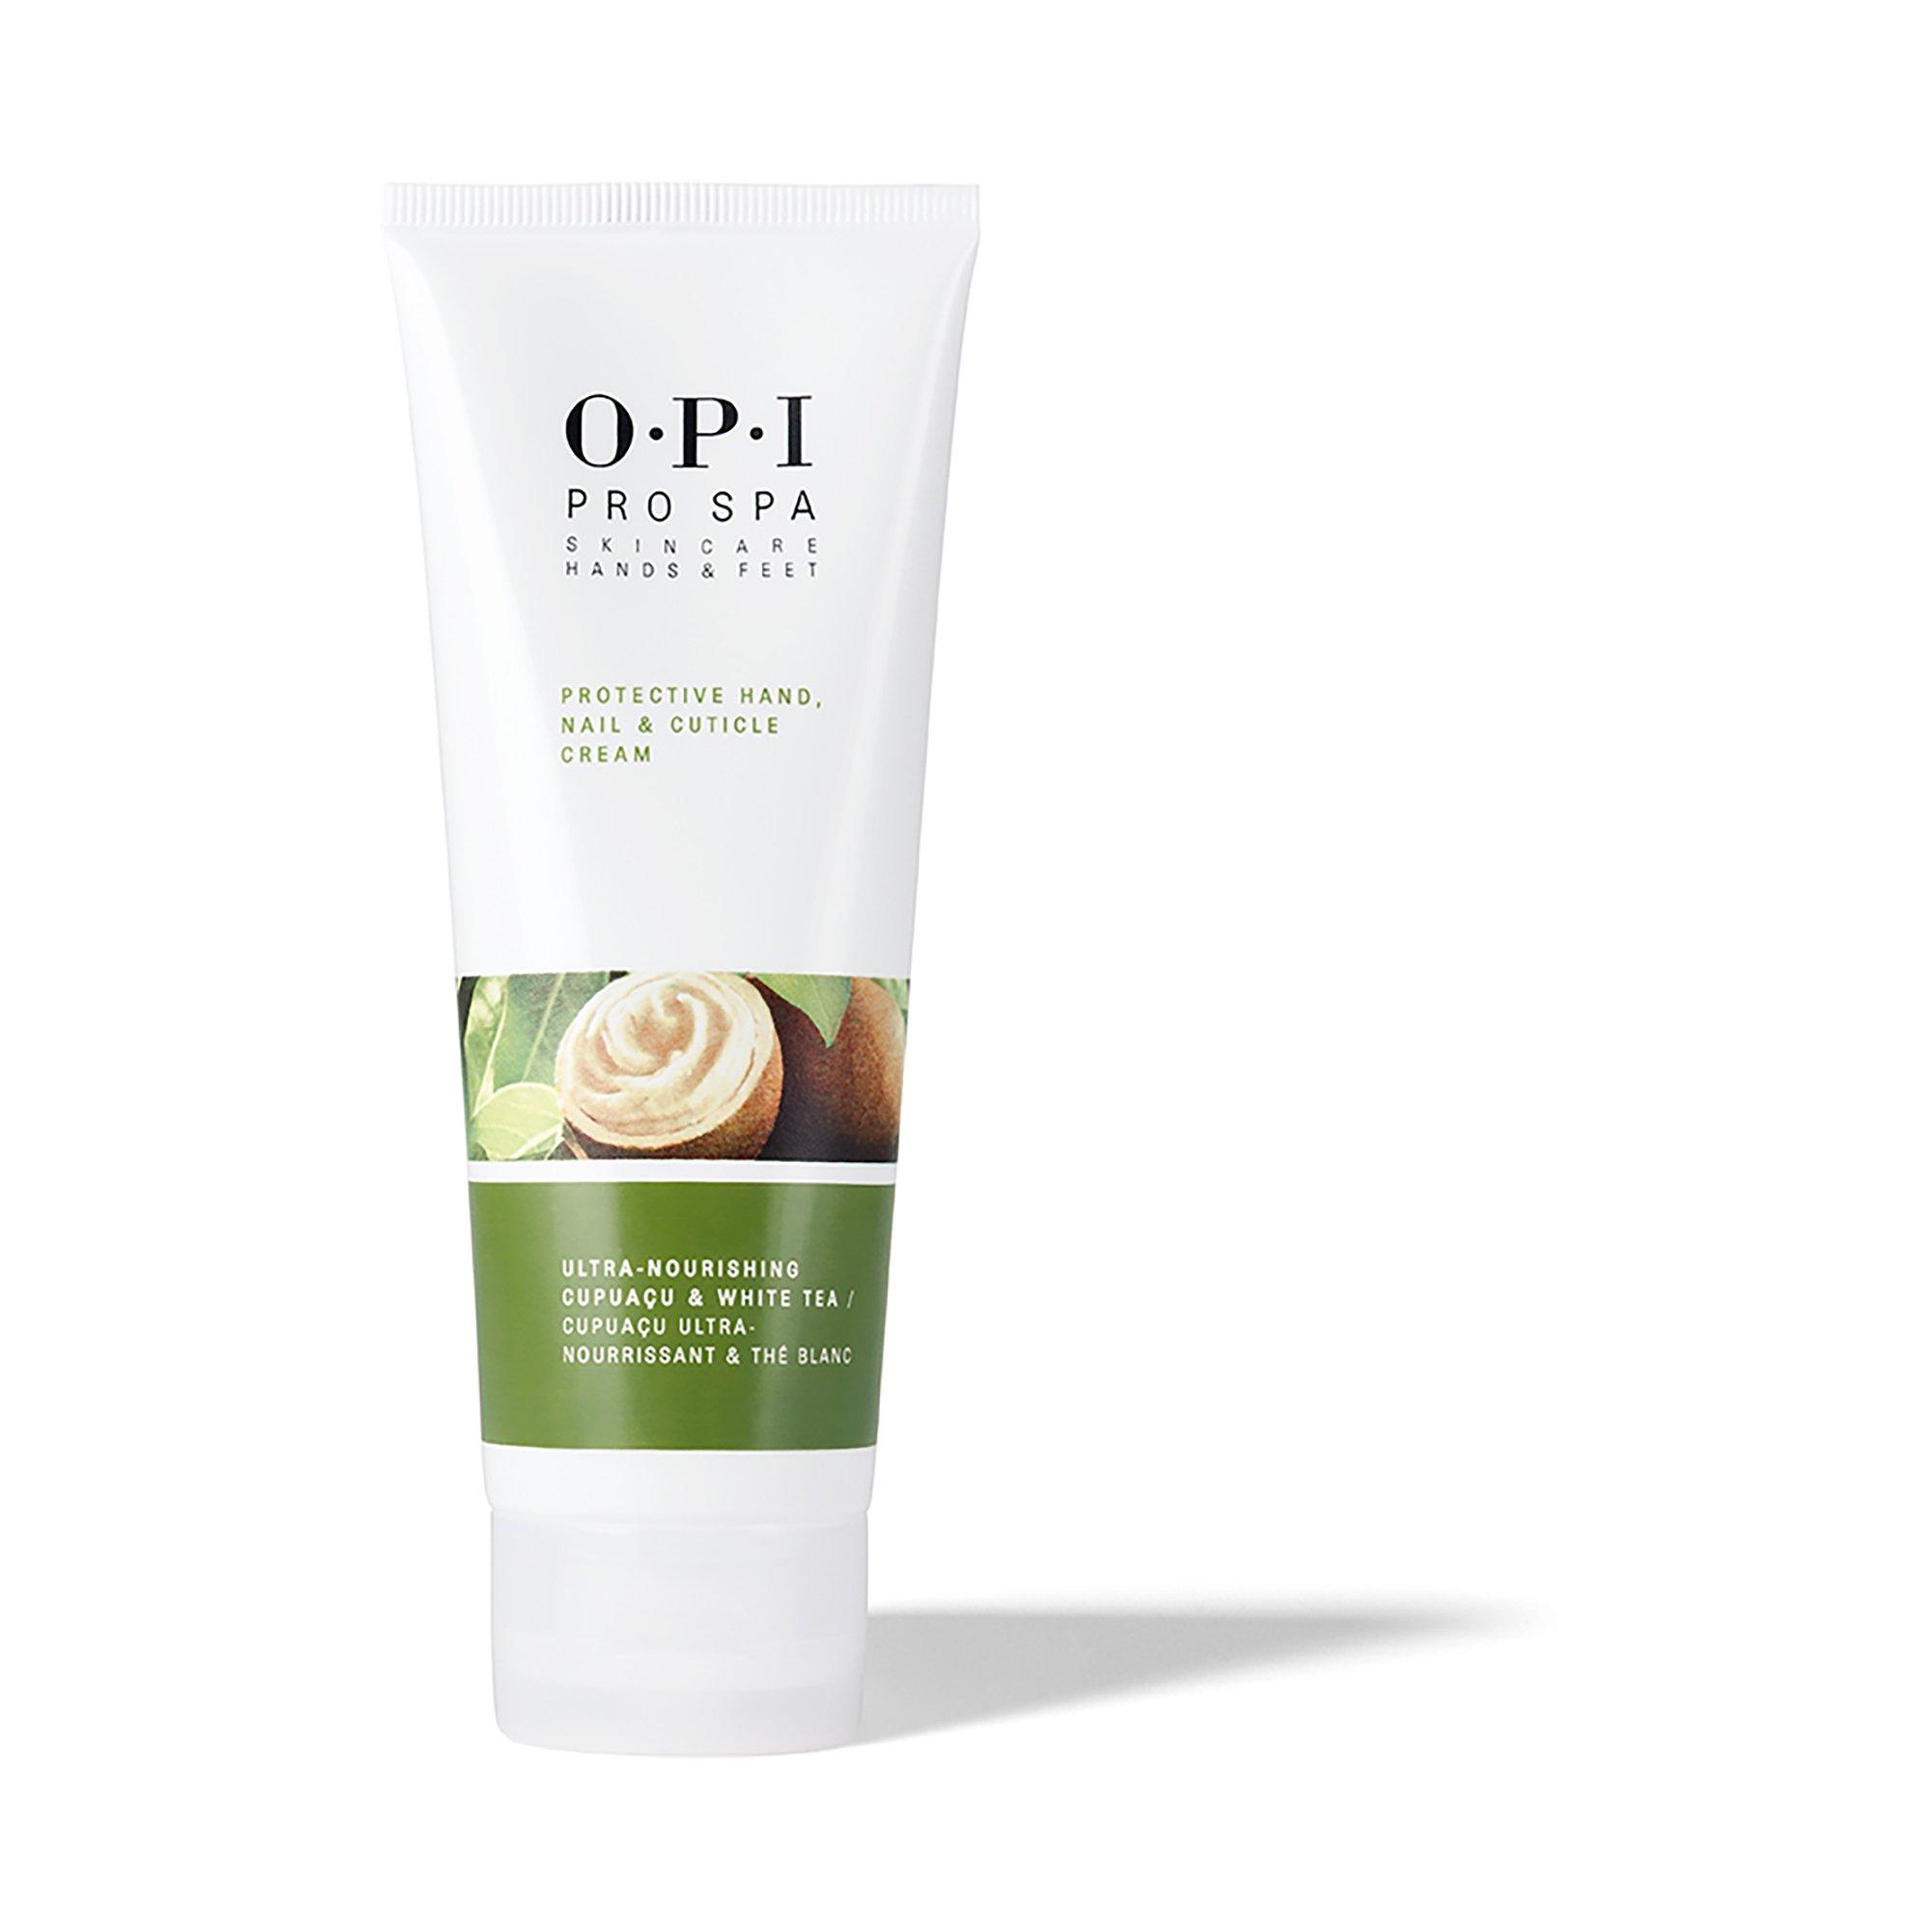 bestrating Verschrikkelijk Retentie OPI Handcrème – ProSpa Protective Hand, Nail & Cuticle Cream | online  kaufen - MANOR